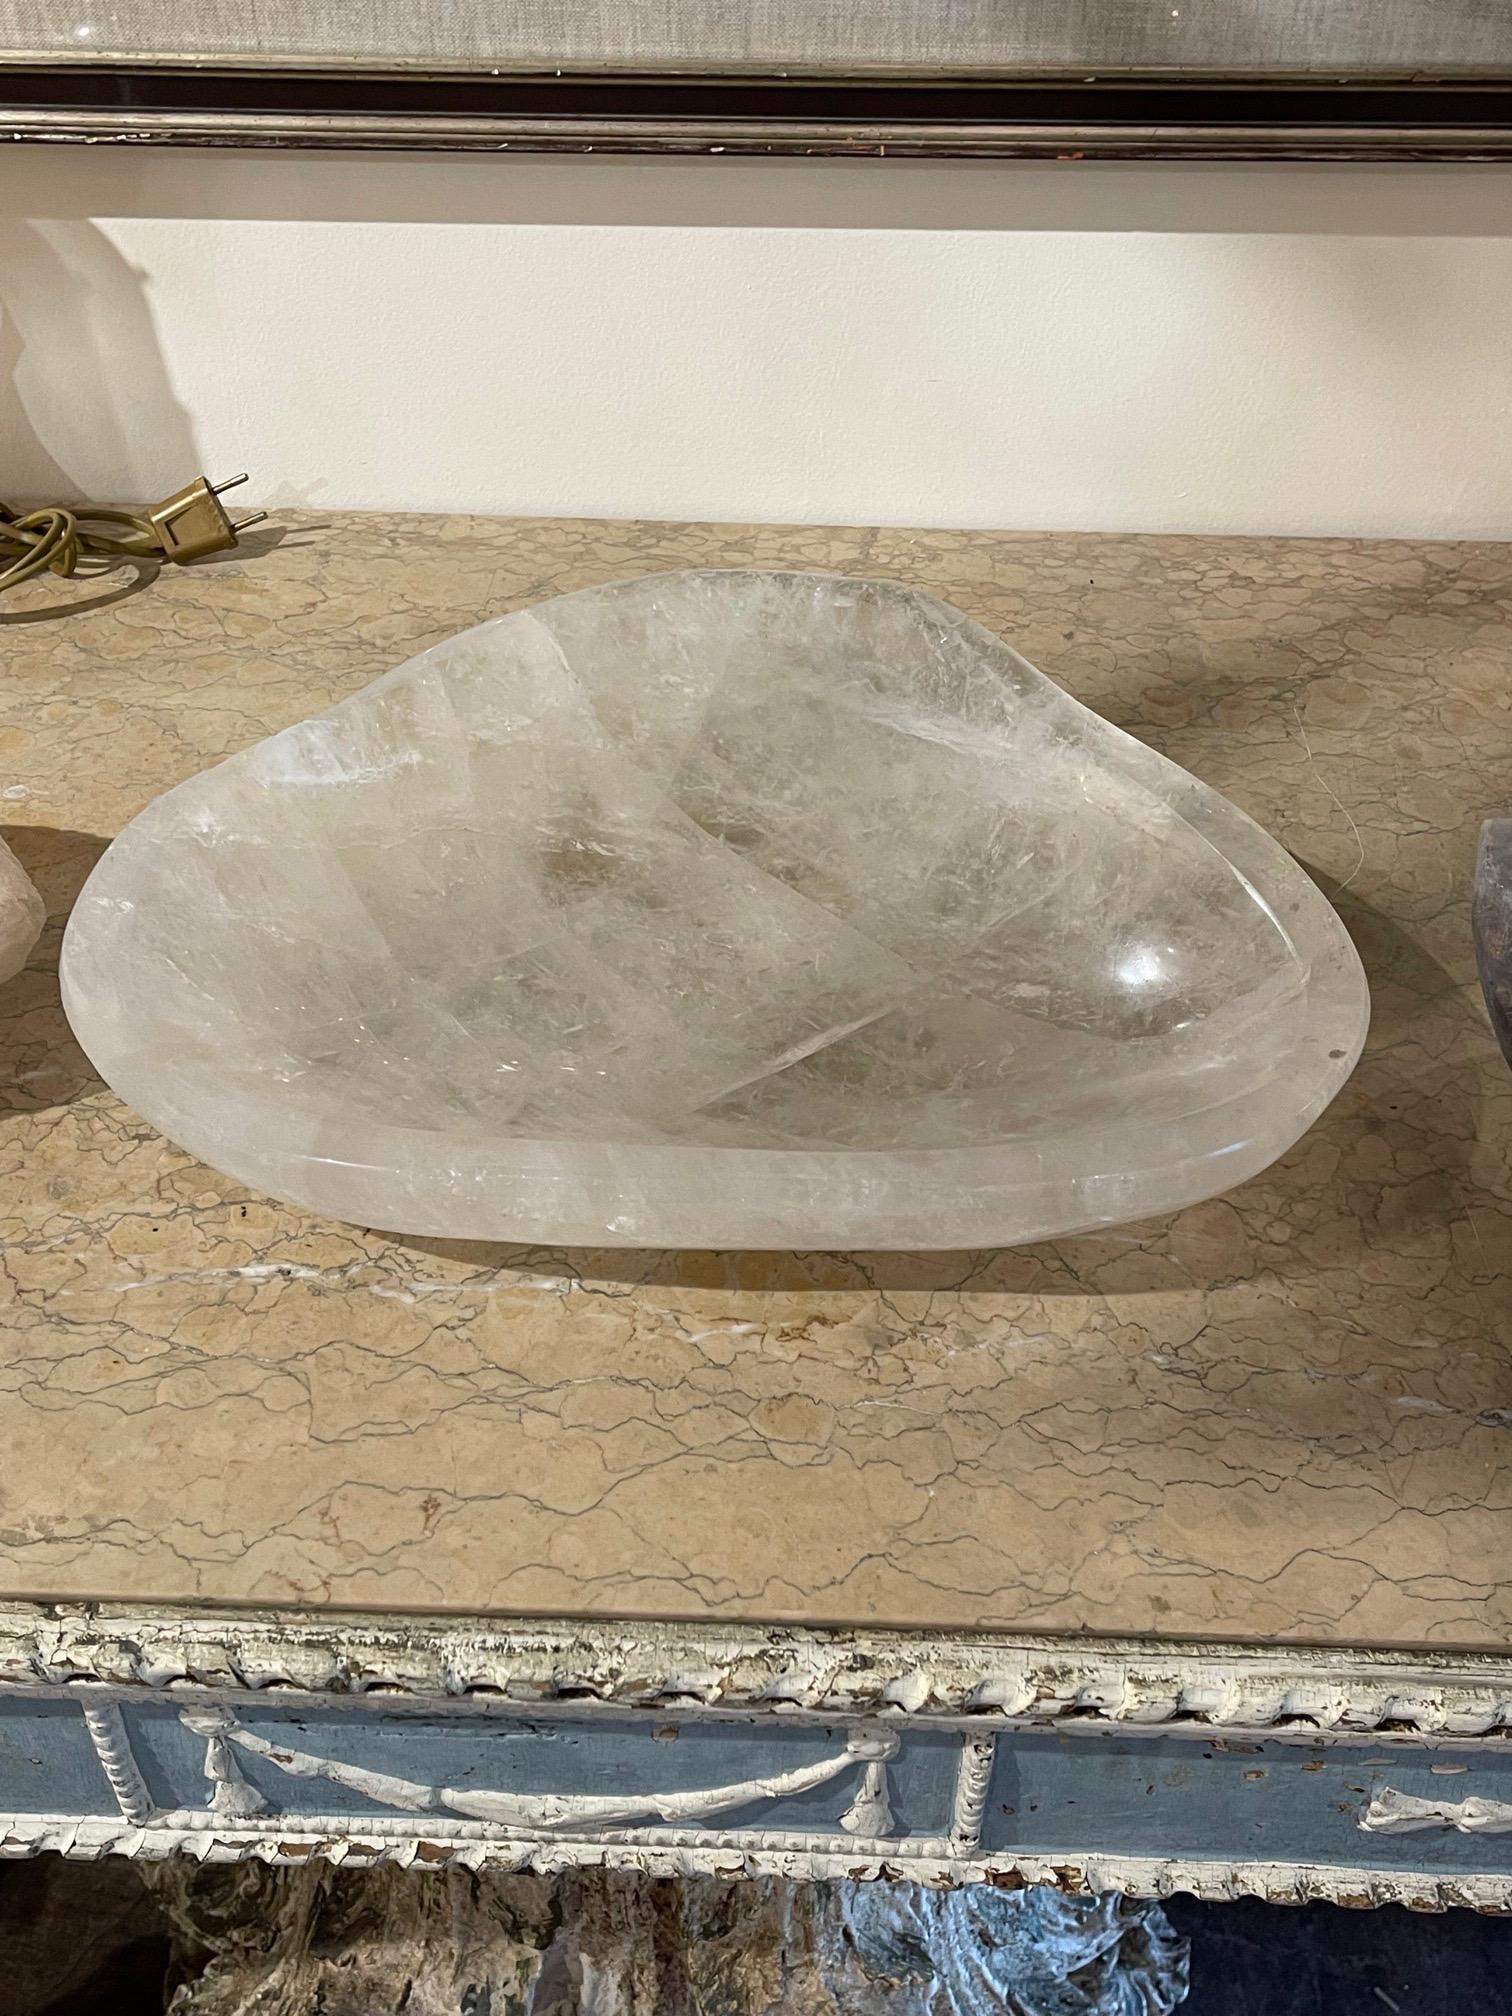 Magnifique bol en cristal de roche de quartz poli provenant du Brésil. Un élément décoratif étonnant pour une belle maison !